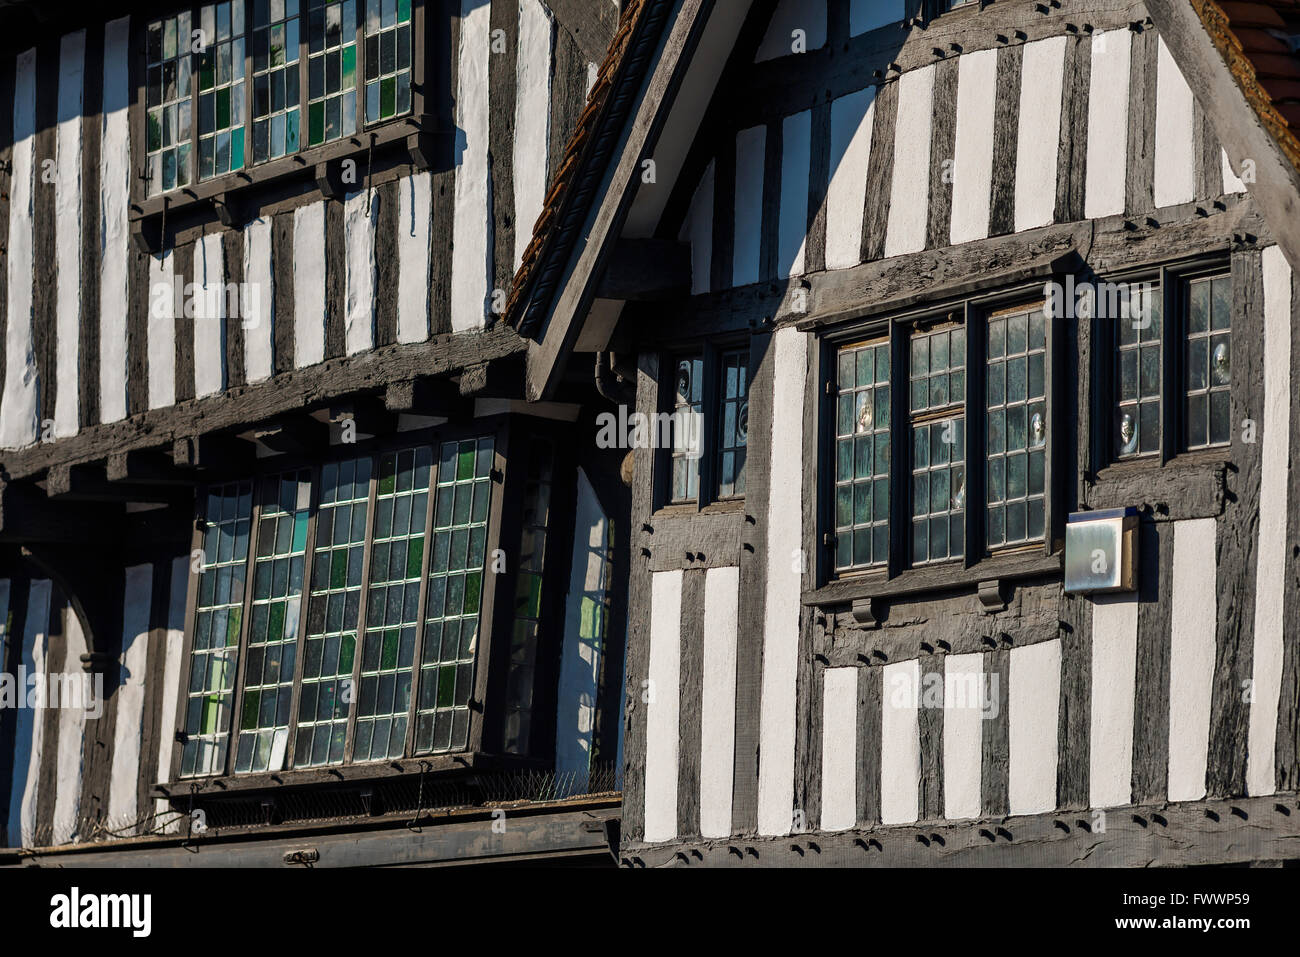 Mittelalterbau England, Fensterdetails eines typischen mittelalterlichen Fachwerkgebäudes im Zentrum von Stratford Upon Avon, England, Großbritannien. Stockfoto